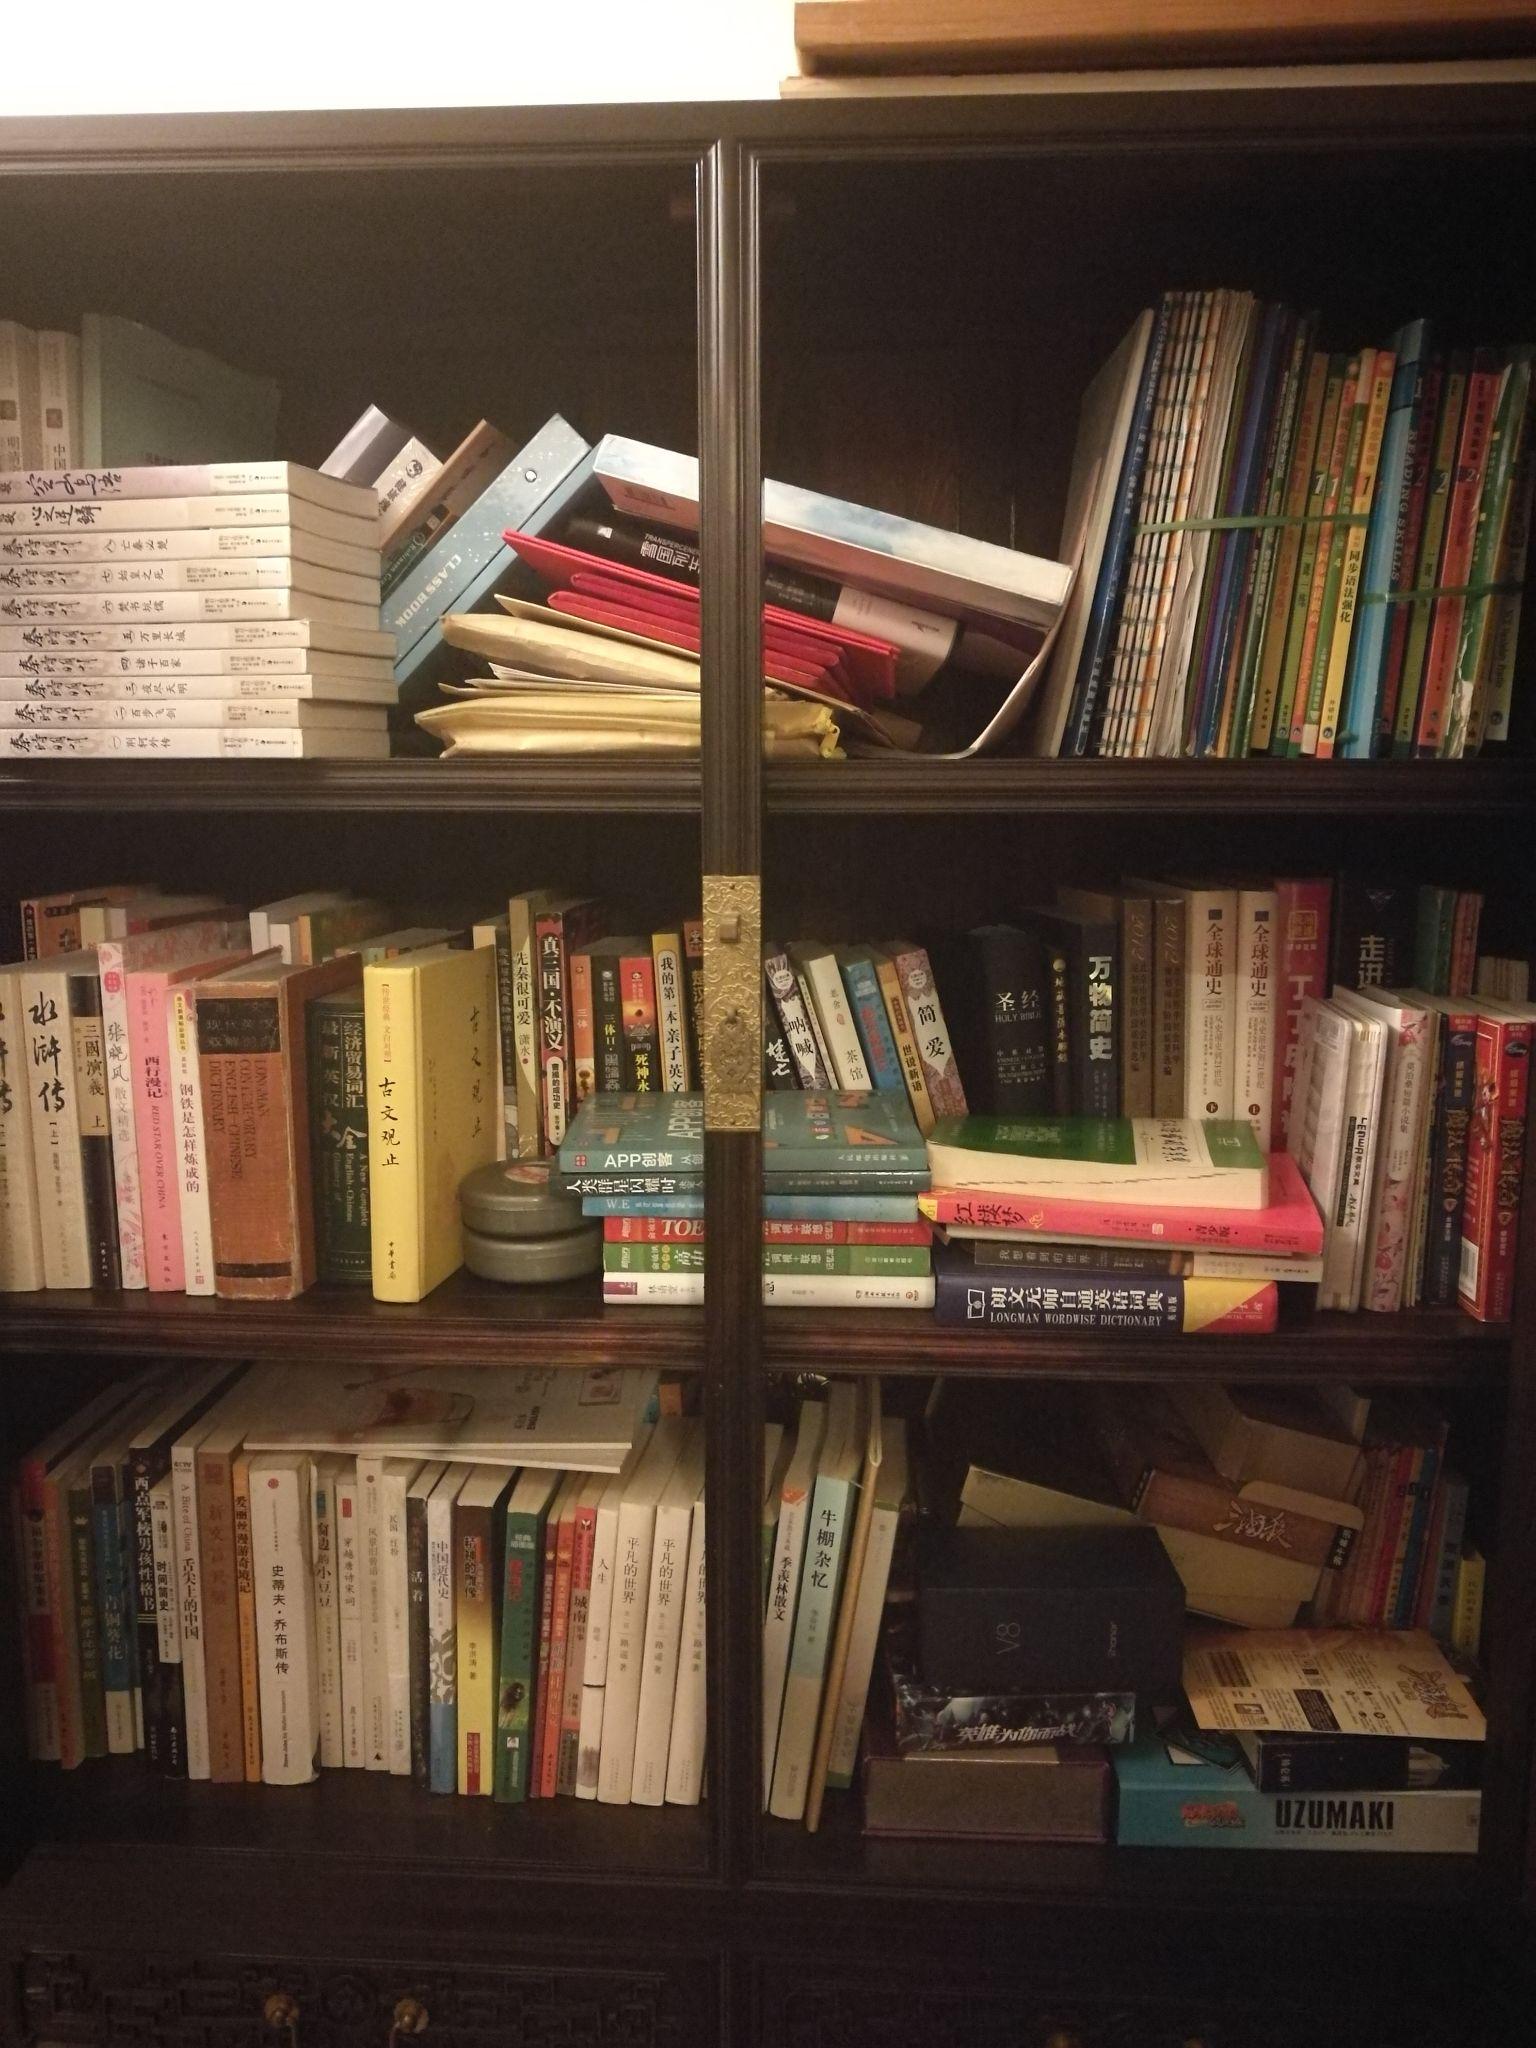 能分享一下家里书柜里的书的照片吗